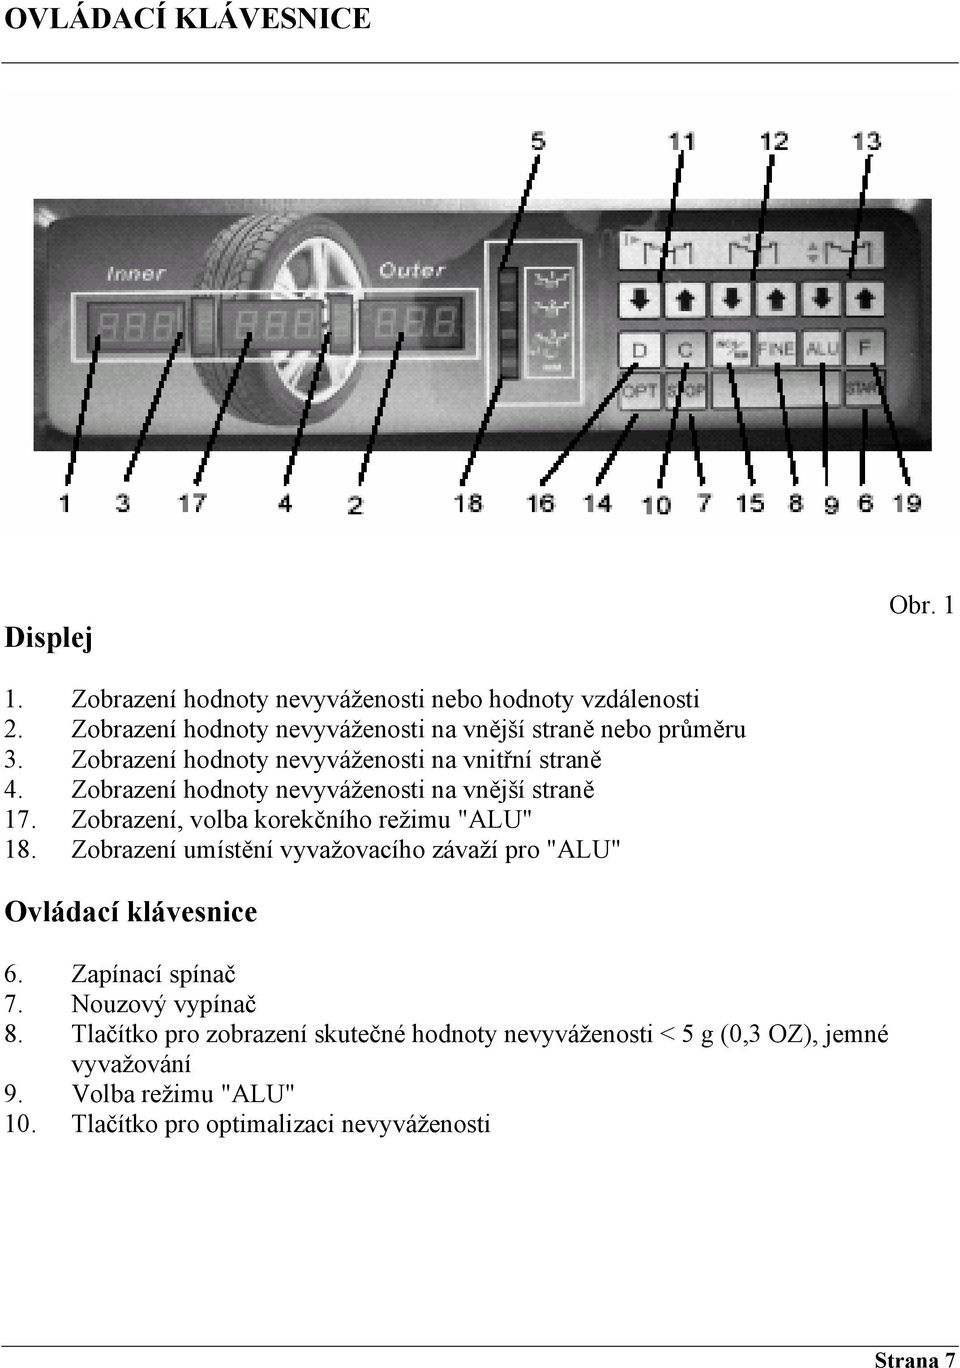 Zobrazení hodnoty nevyváženosti na vnější straně 17. Zobrazení, volba korekčního režimu "ALU" 18.